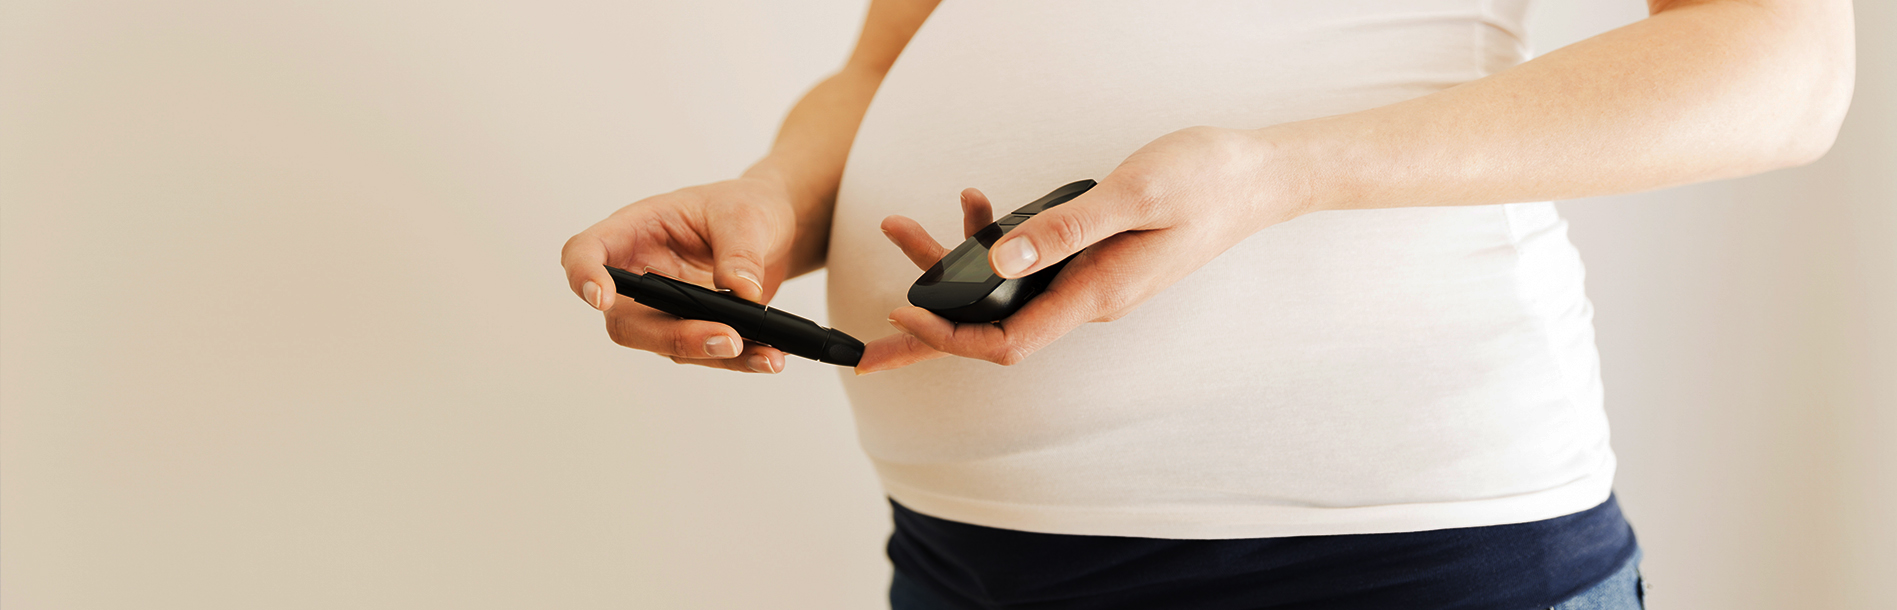 Diabetes na gravidez: como diagnosticar e tratar essa condição um tanto comum